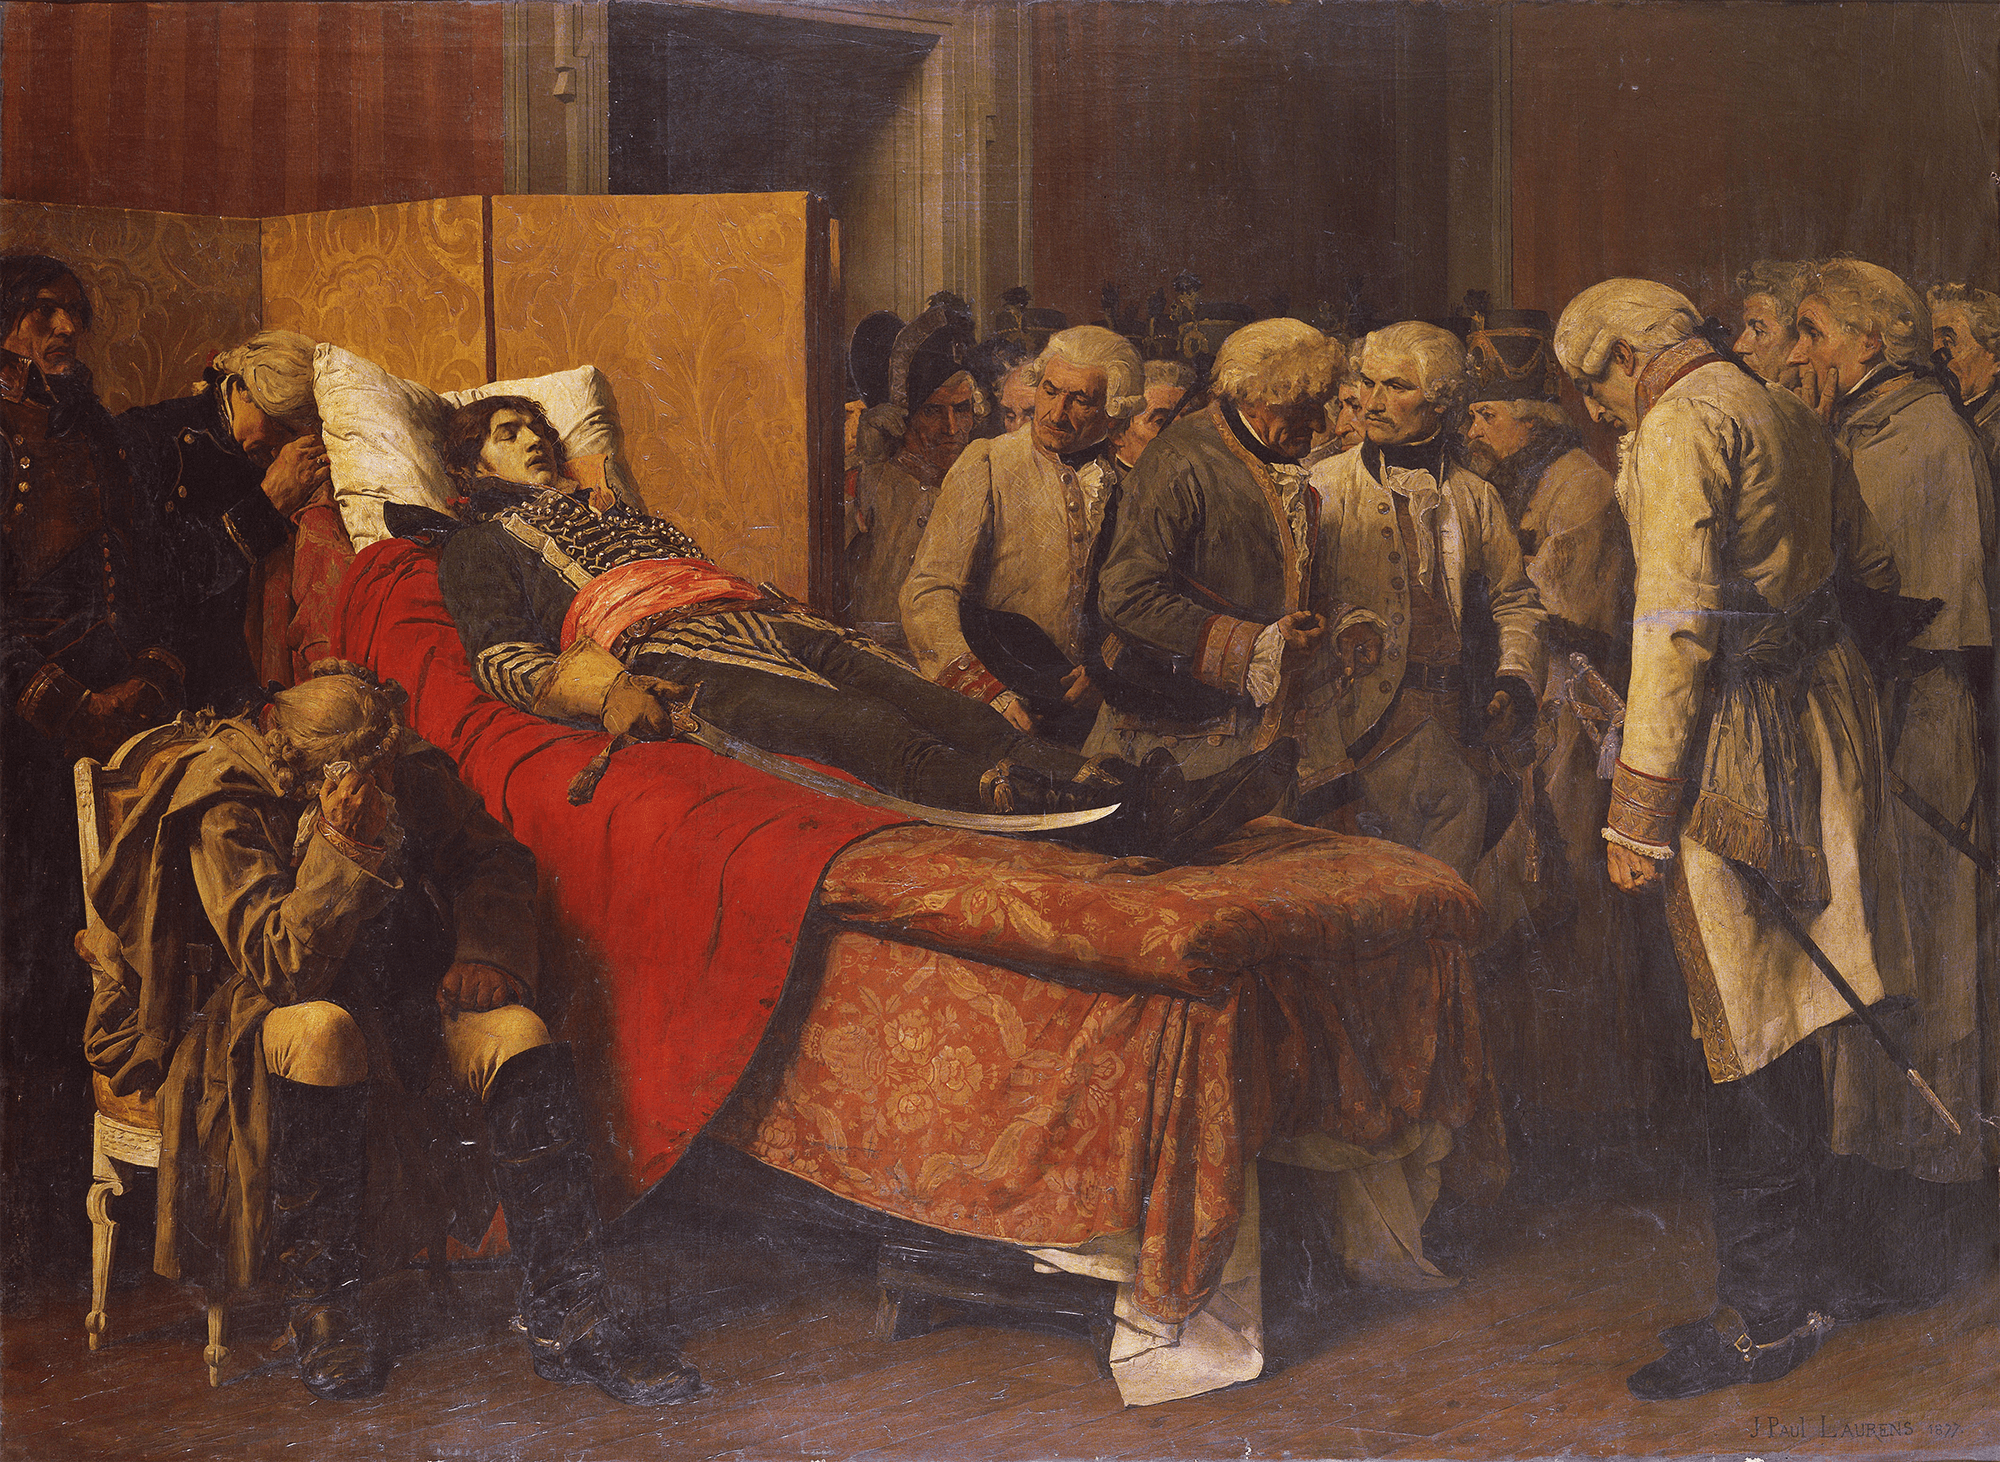 マルソー将軍の遺体の前のオーストリアの参謀たち